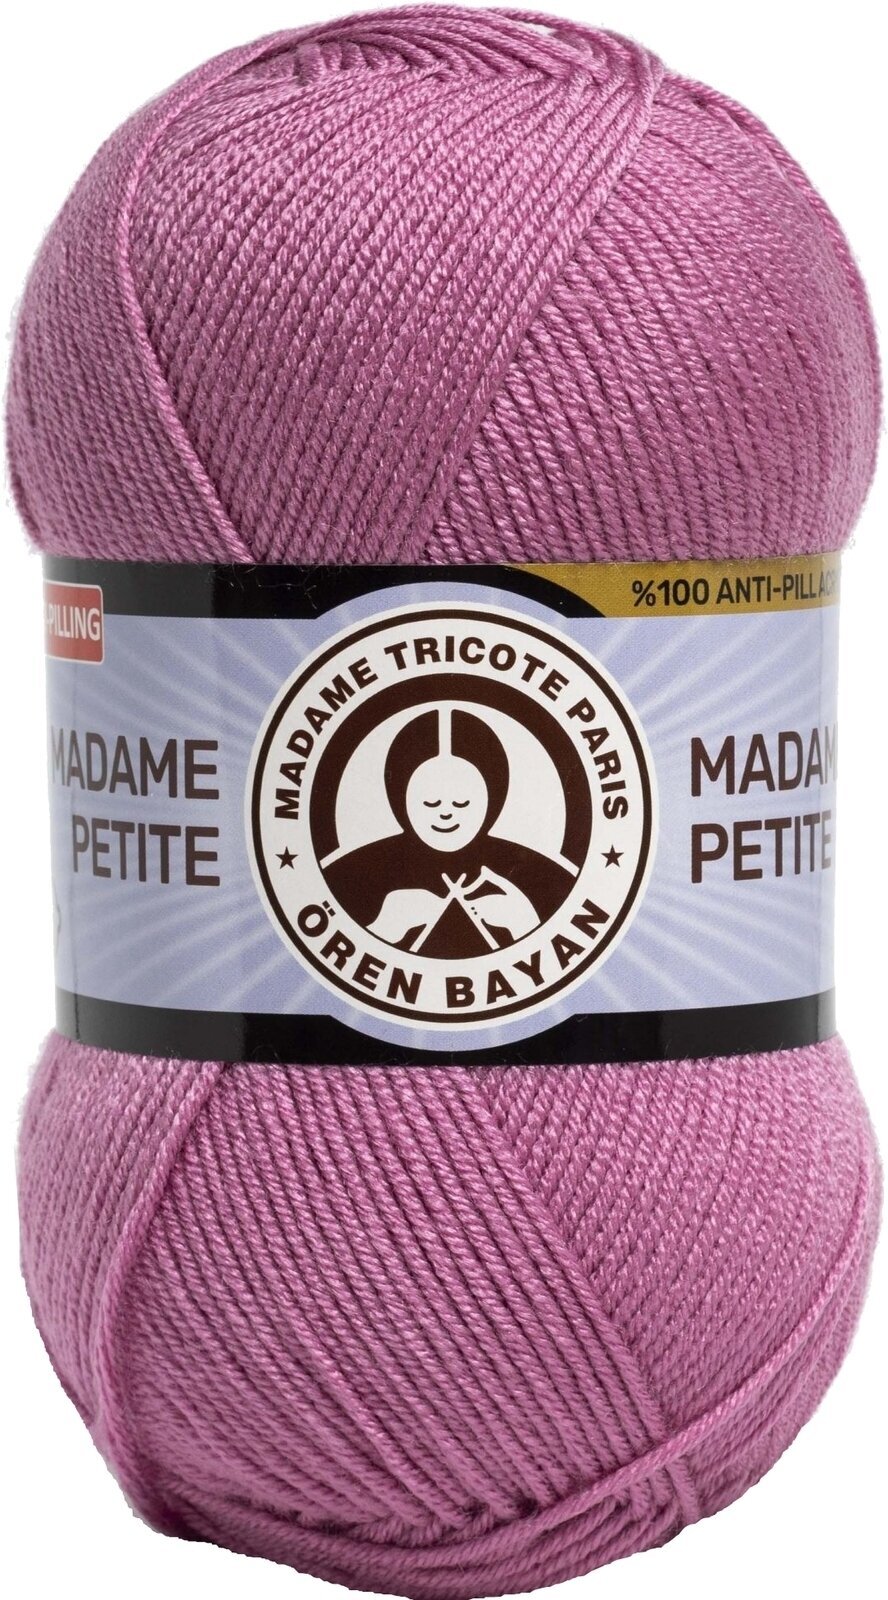 Pletací příze Madame Tricote Paris Madame Petite 3848 49 Pletací příze